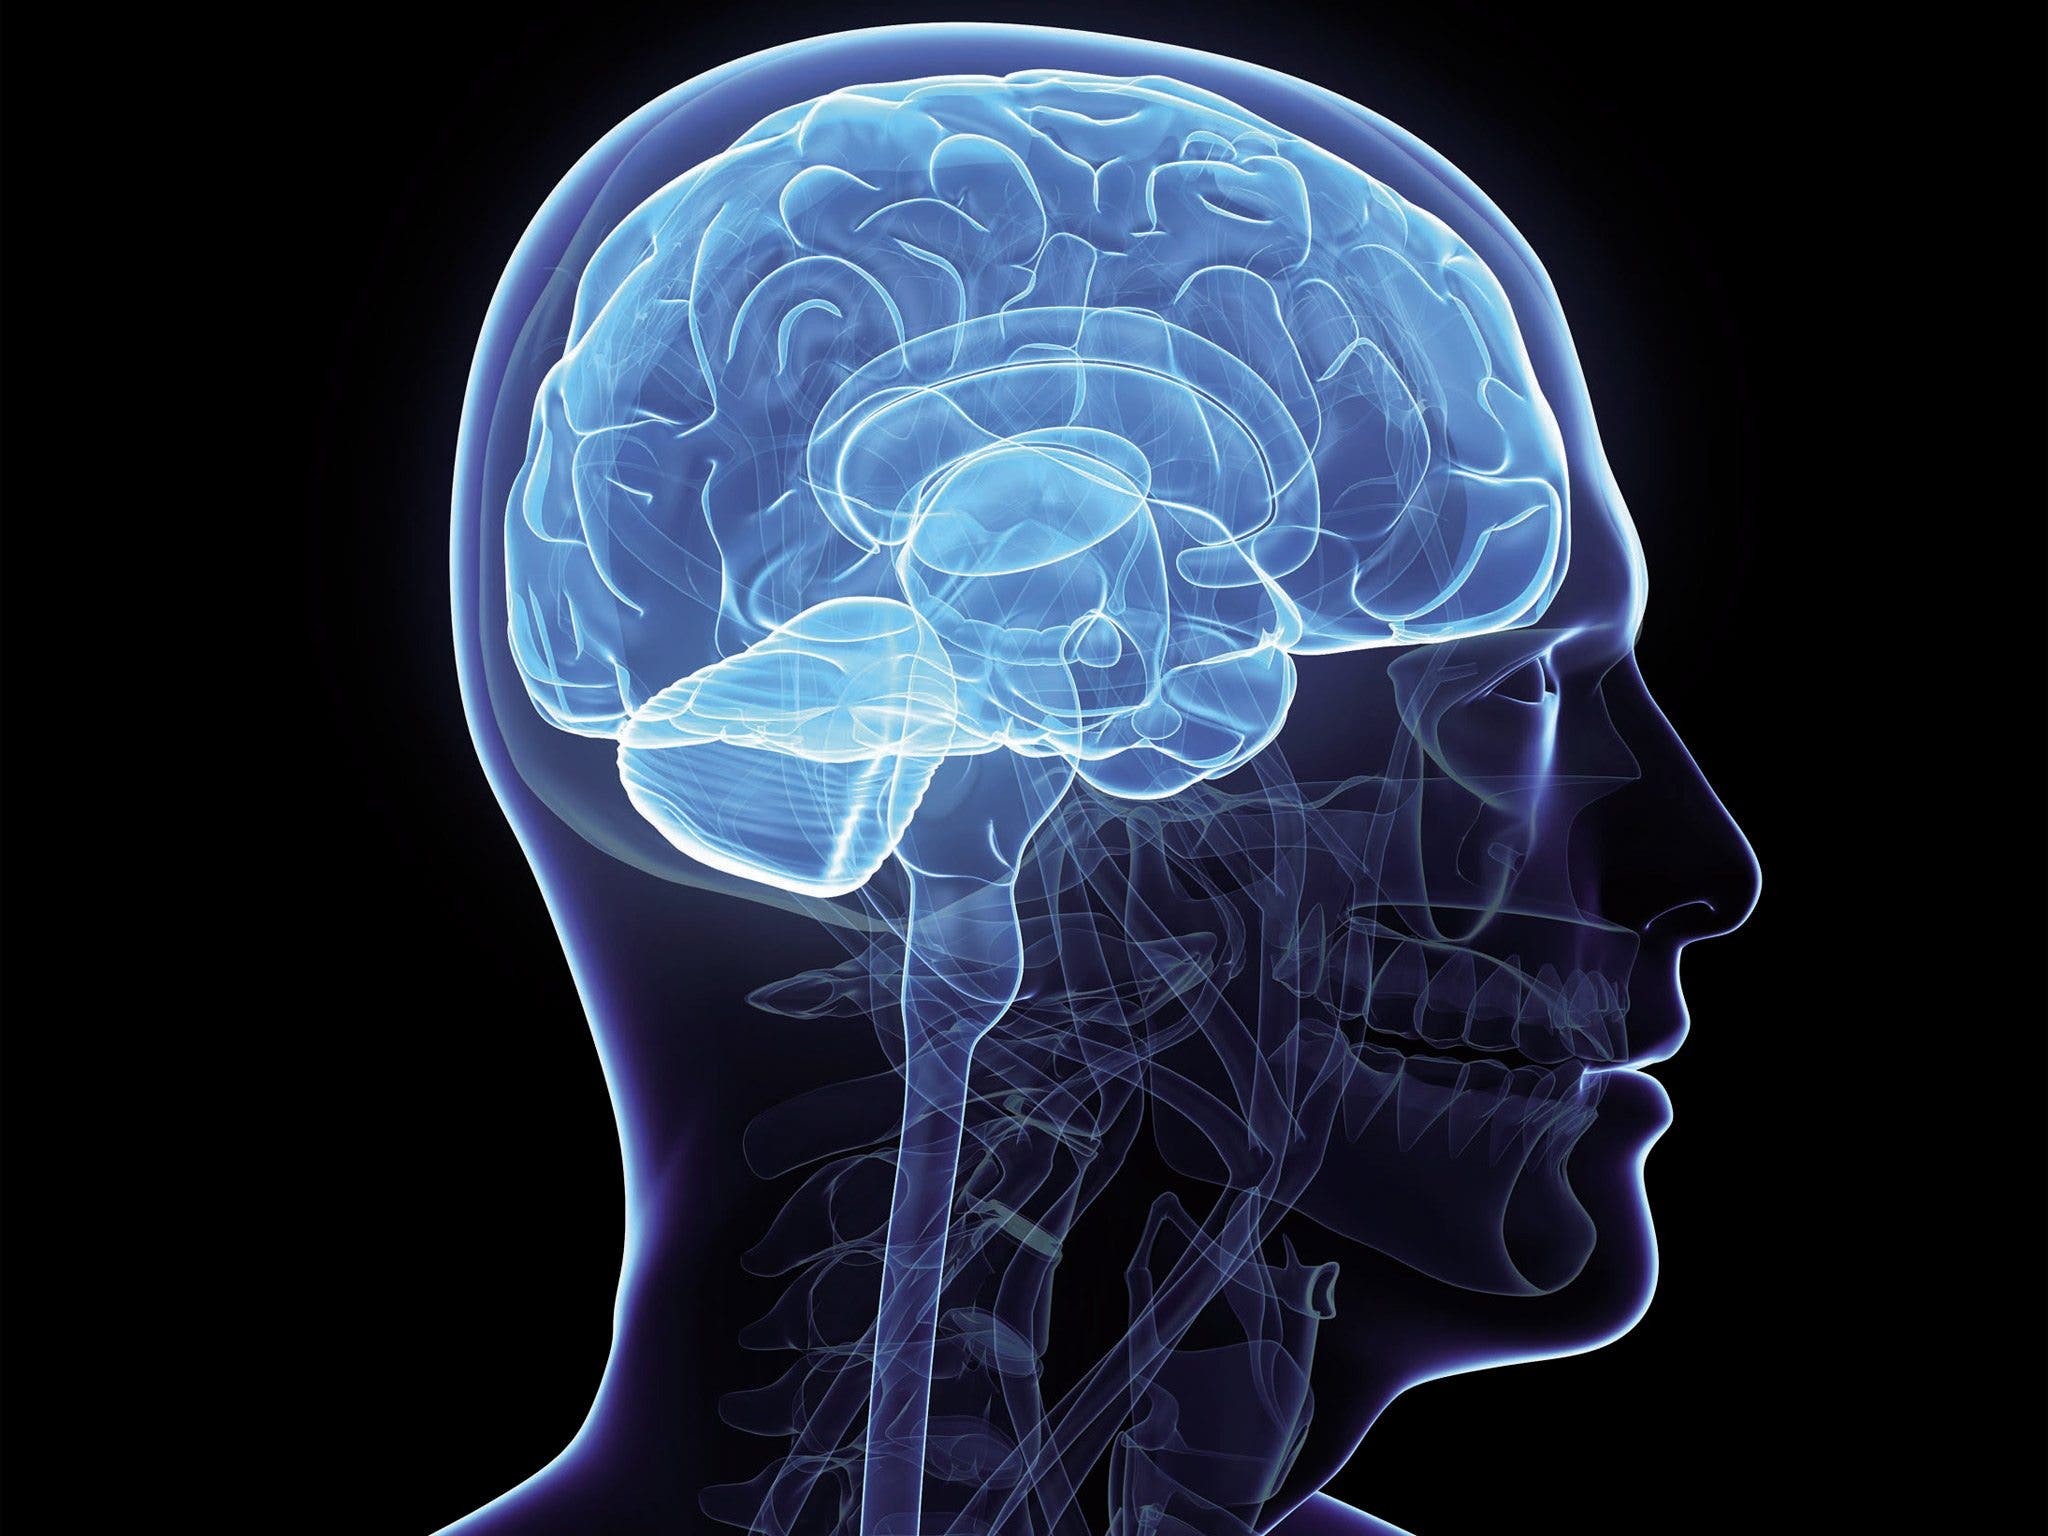 Brain imaging. Изображение мозга человека. Человеческий мозг картинки.